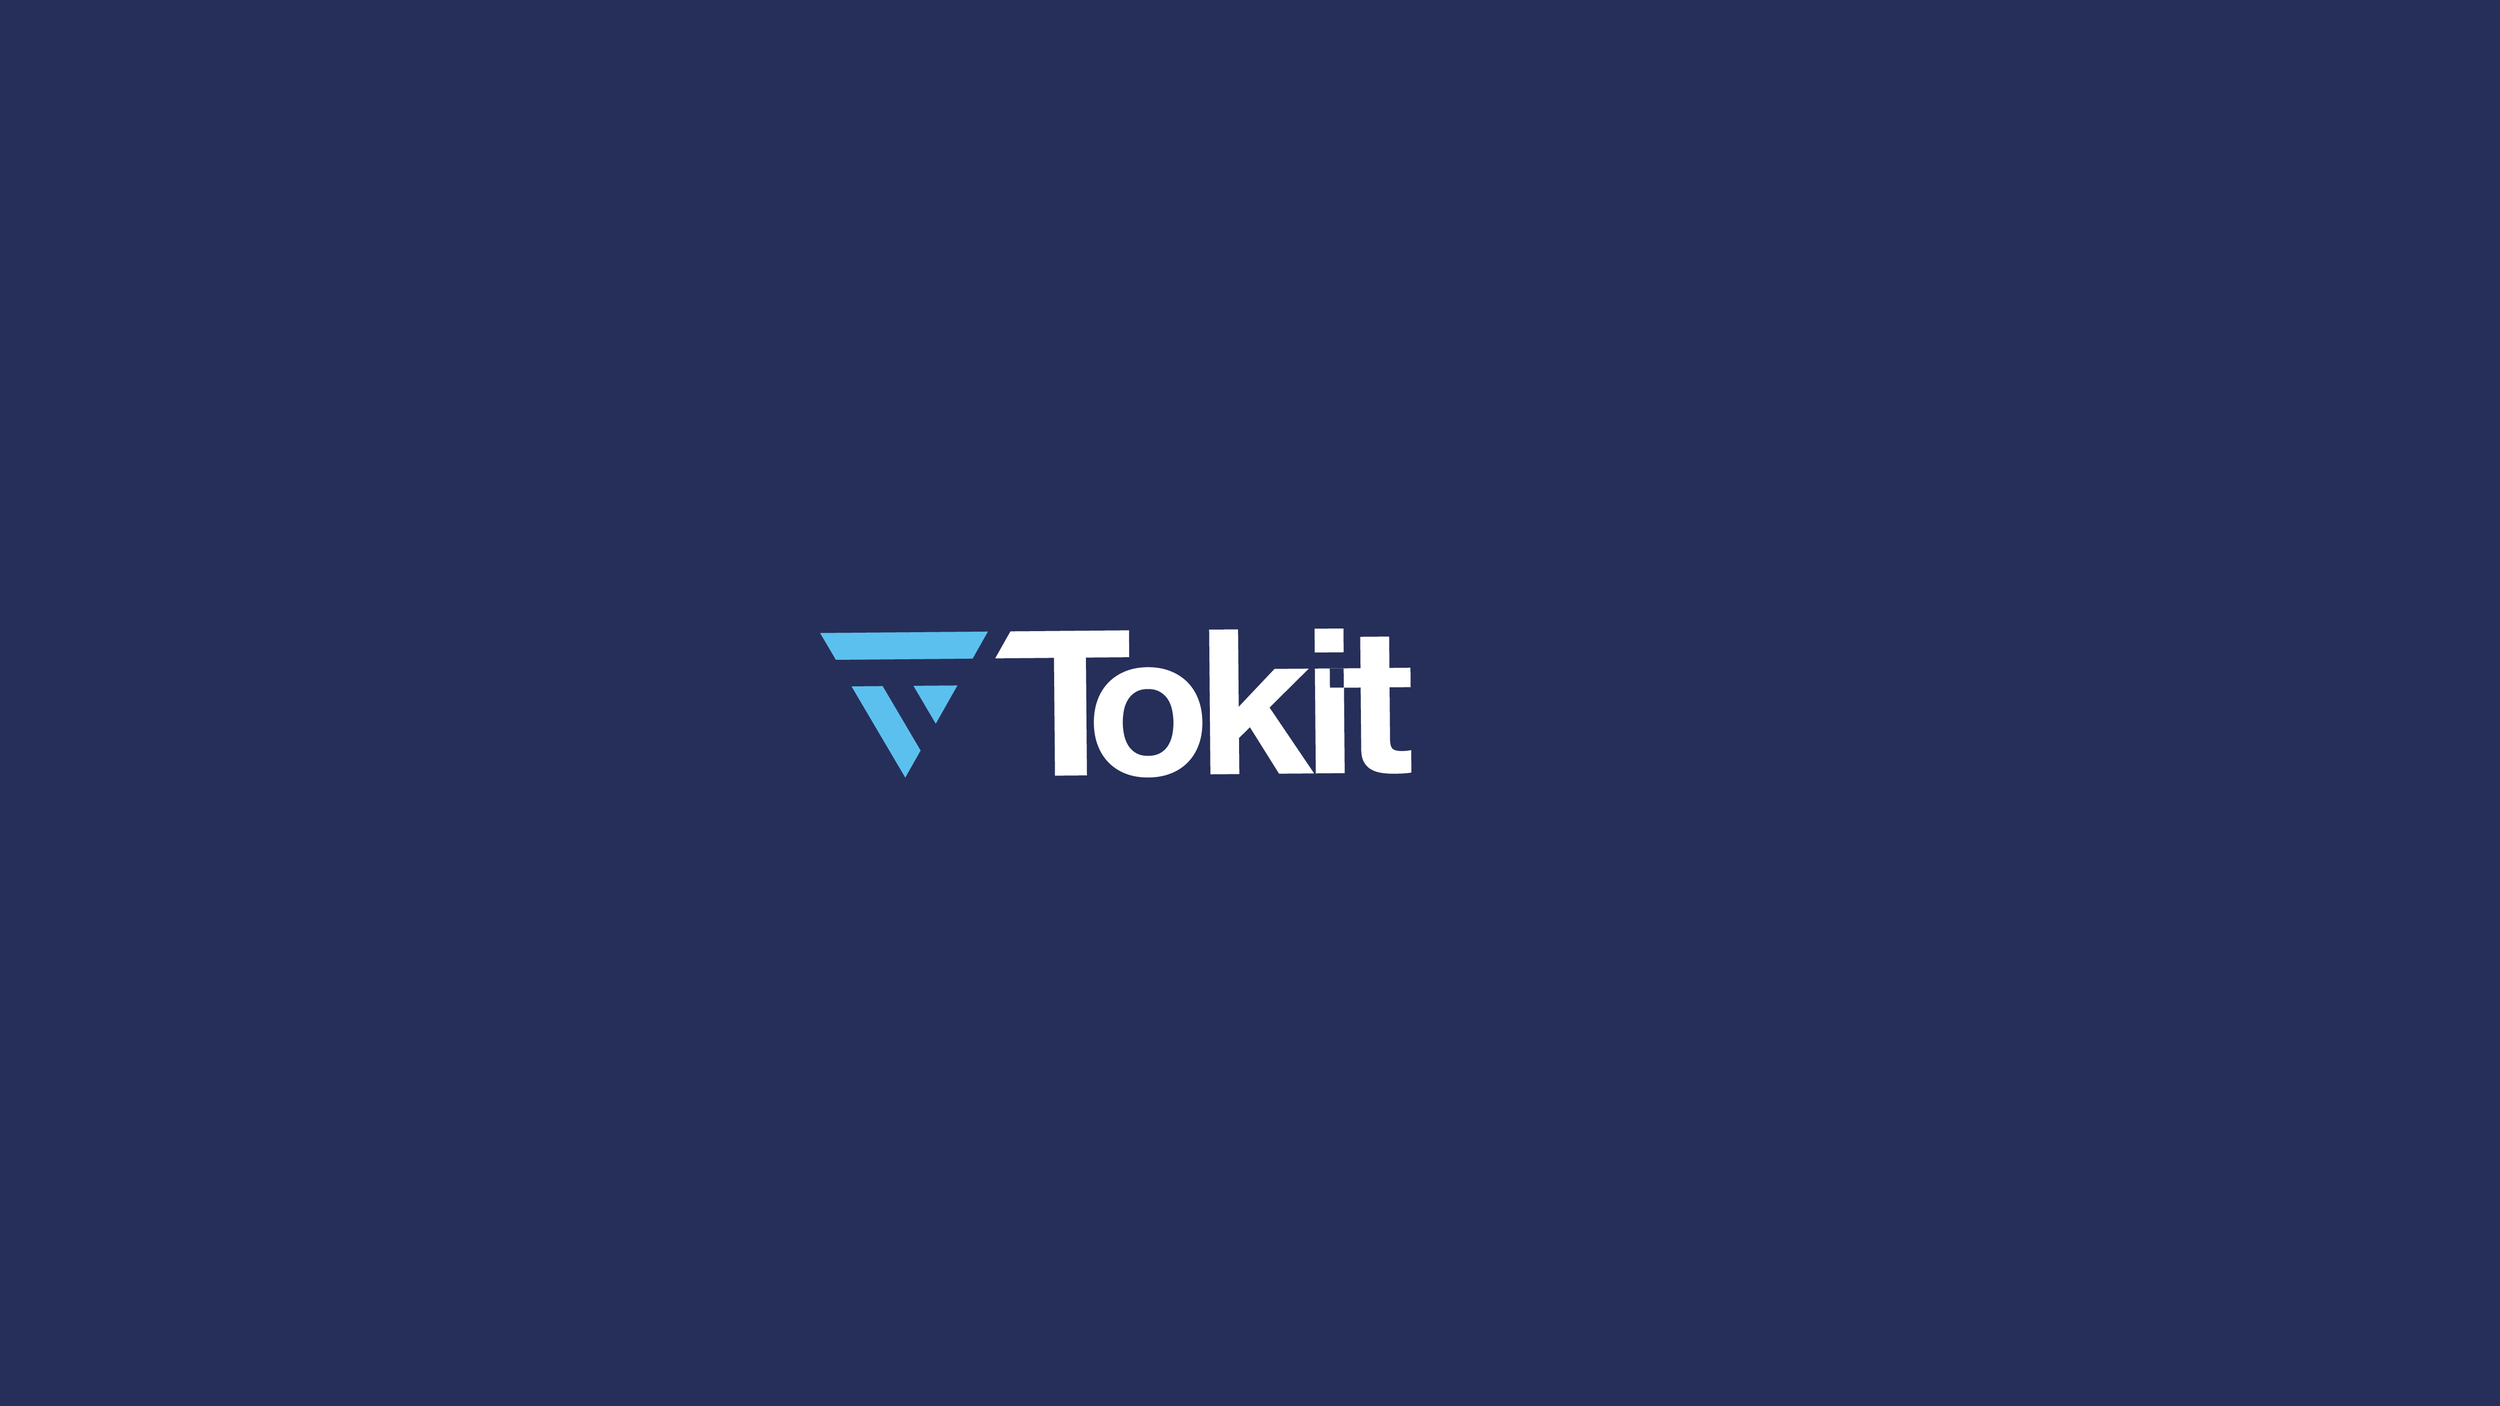 Tokit Presentation_2019.png